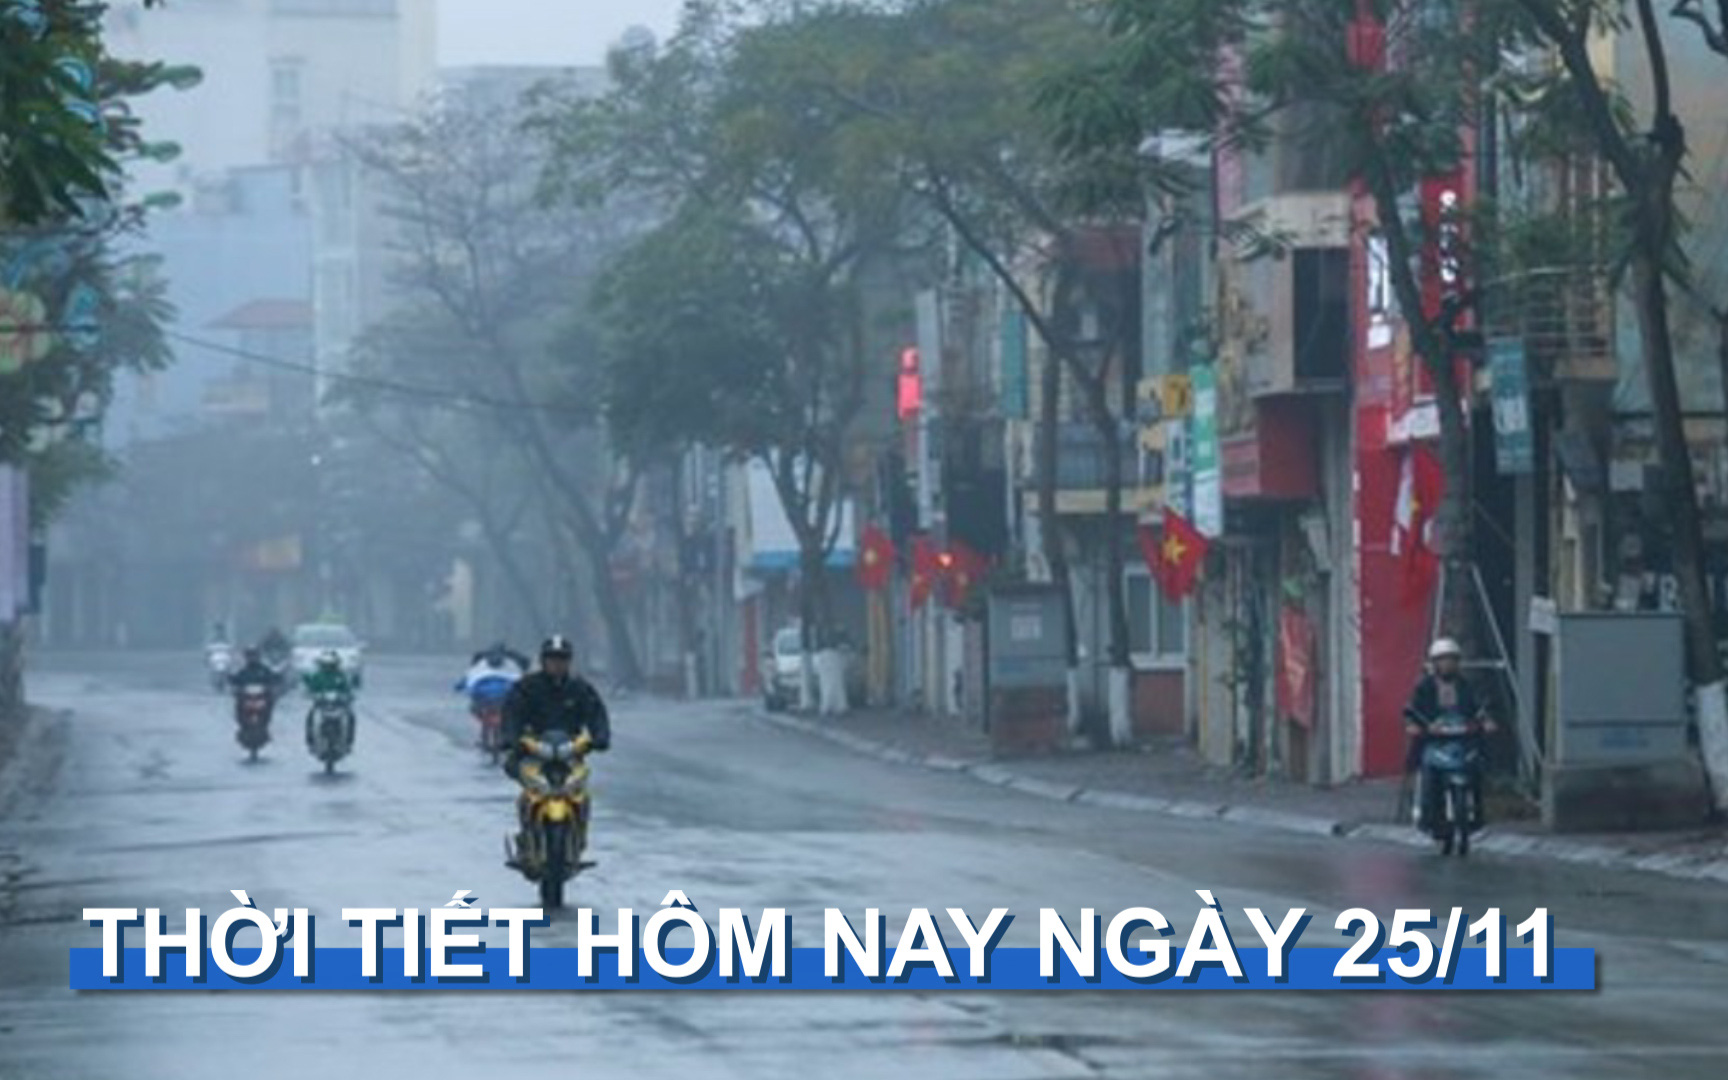 Thời tiết hôm nay 25/11: Mưa diện rộng ở Quảng Nam - Bình Định